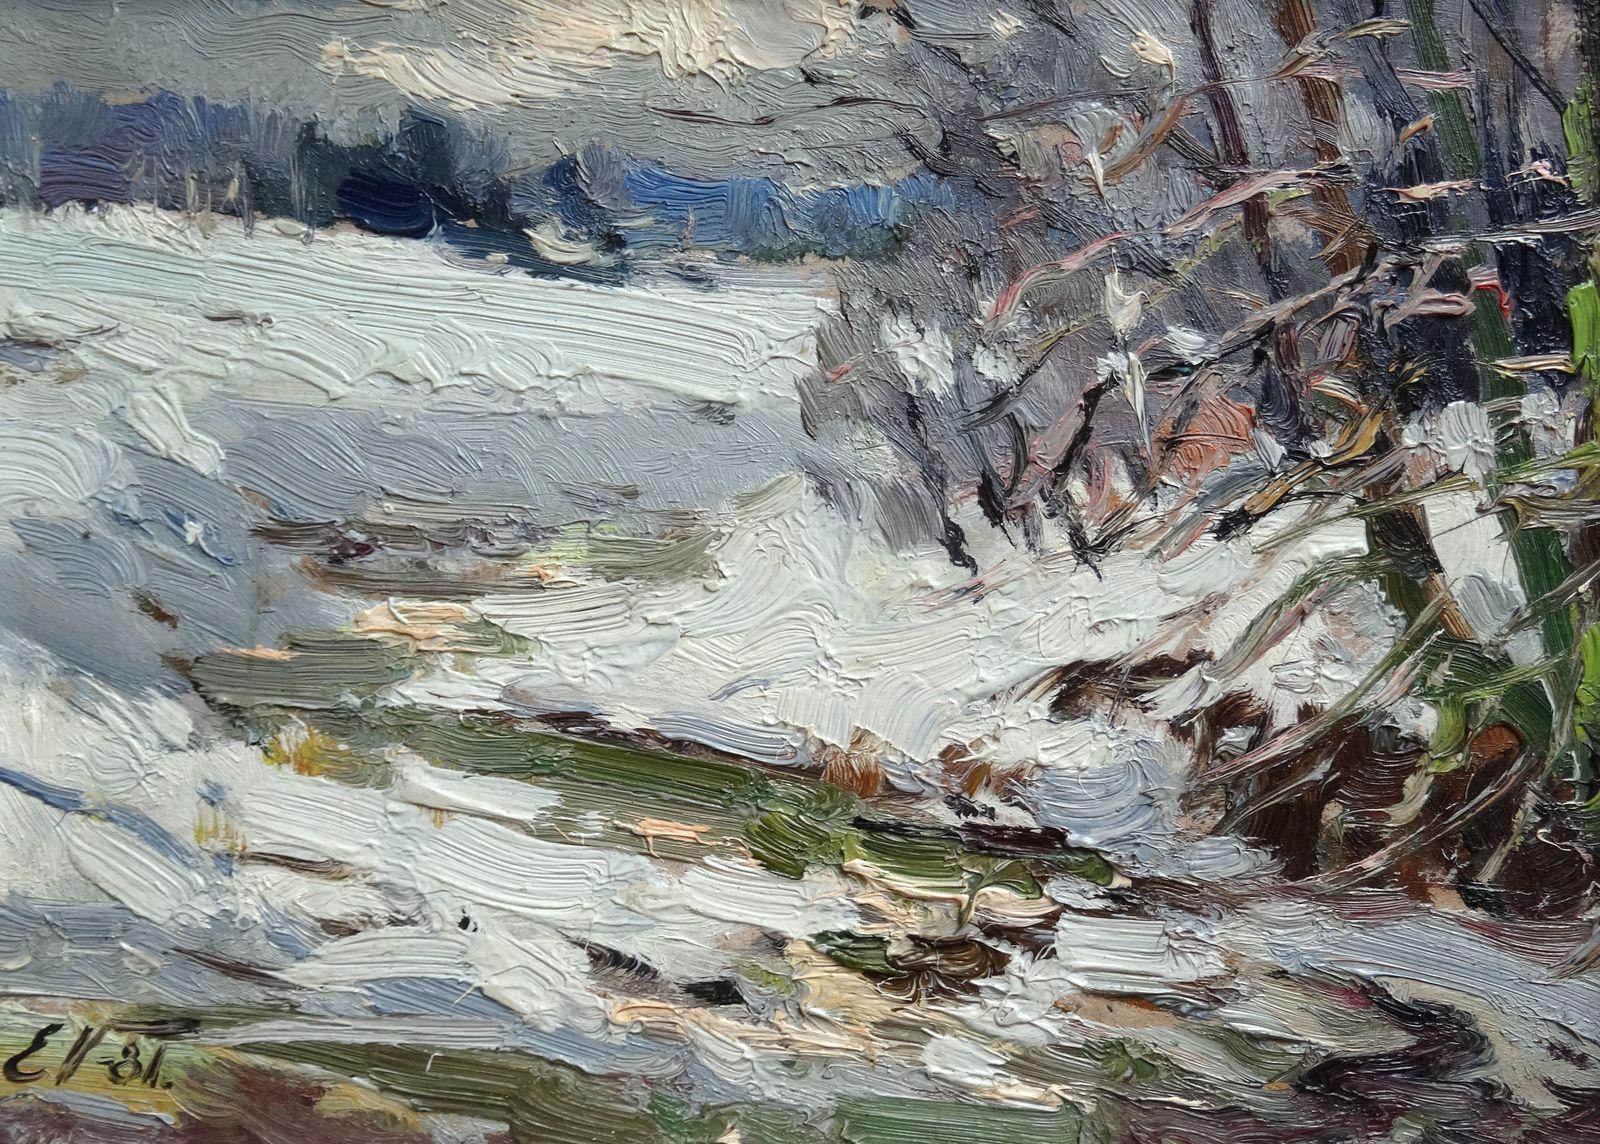 River in winter. 1981, cardboard, oil, 22x31 cm